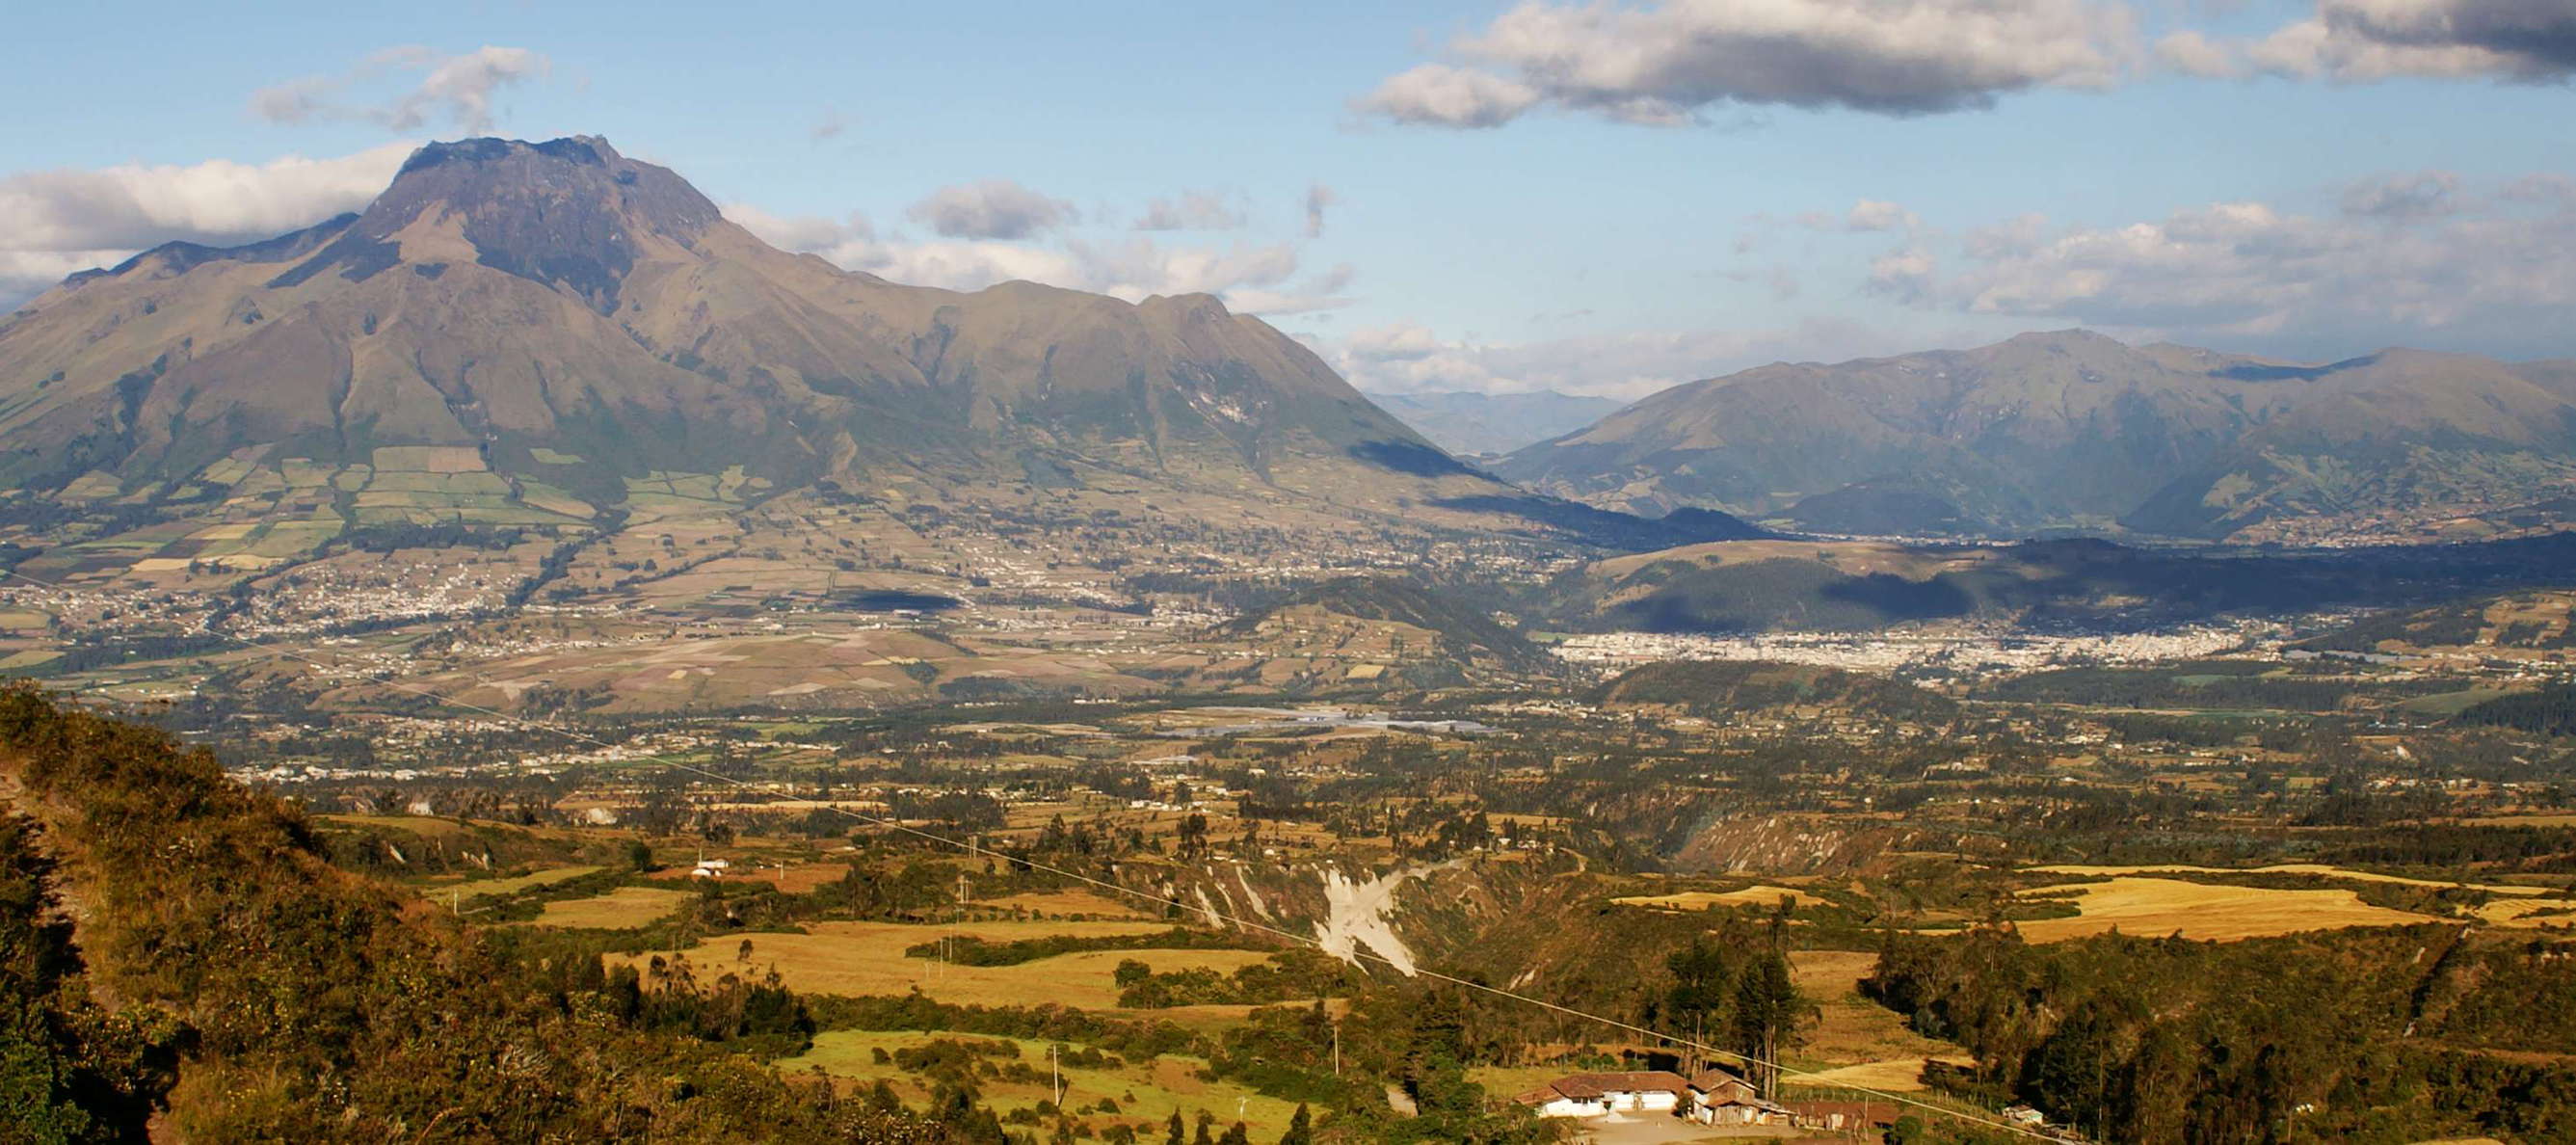 Otavalo and Volcán Imbabura